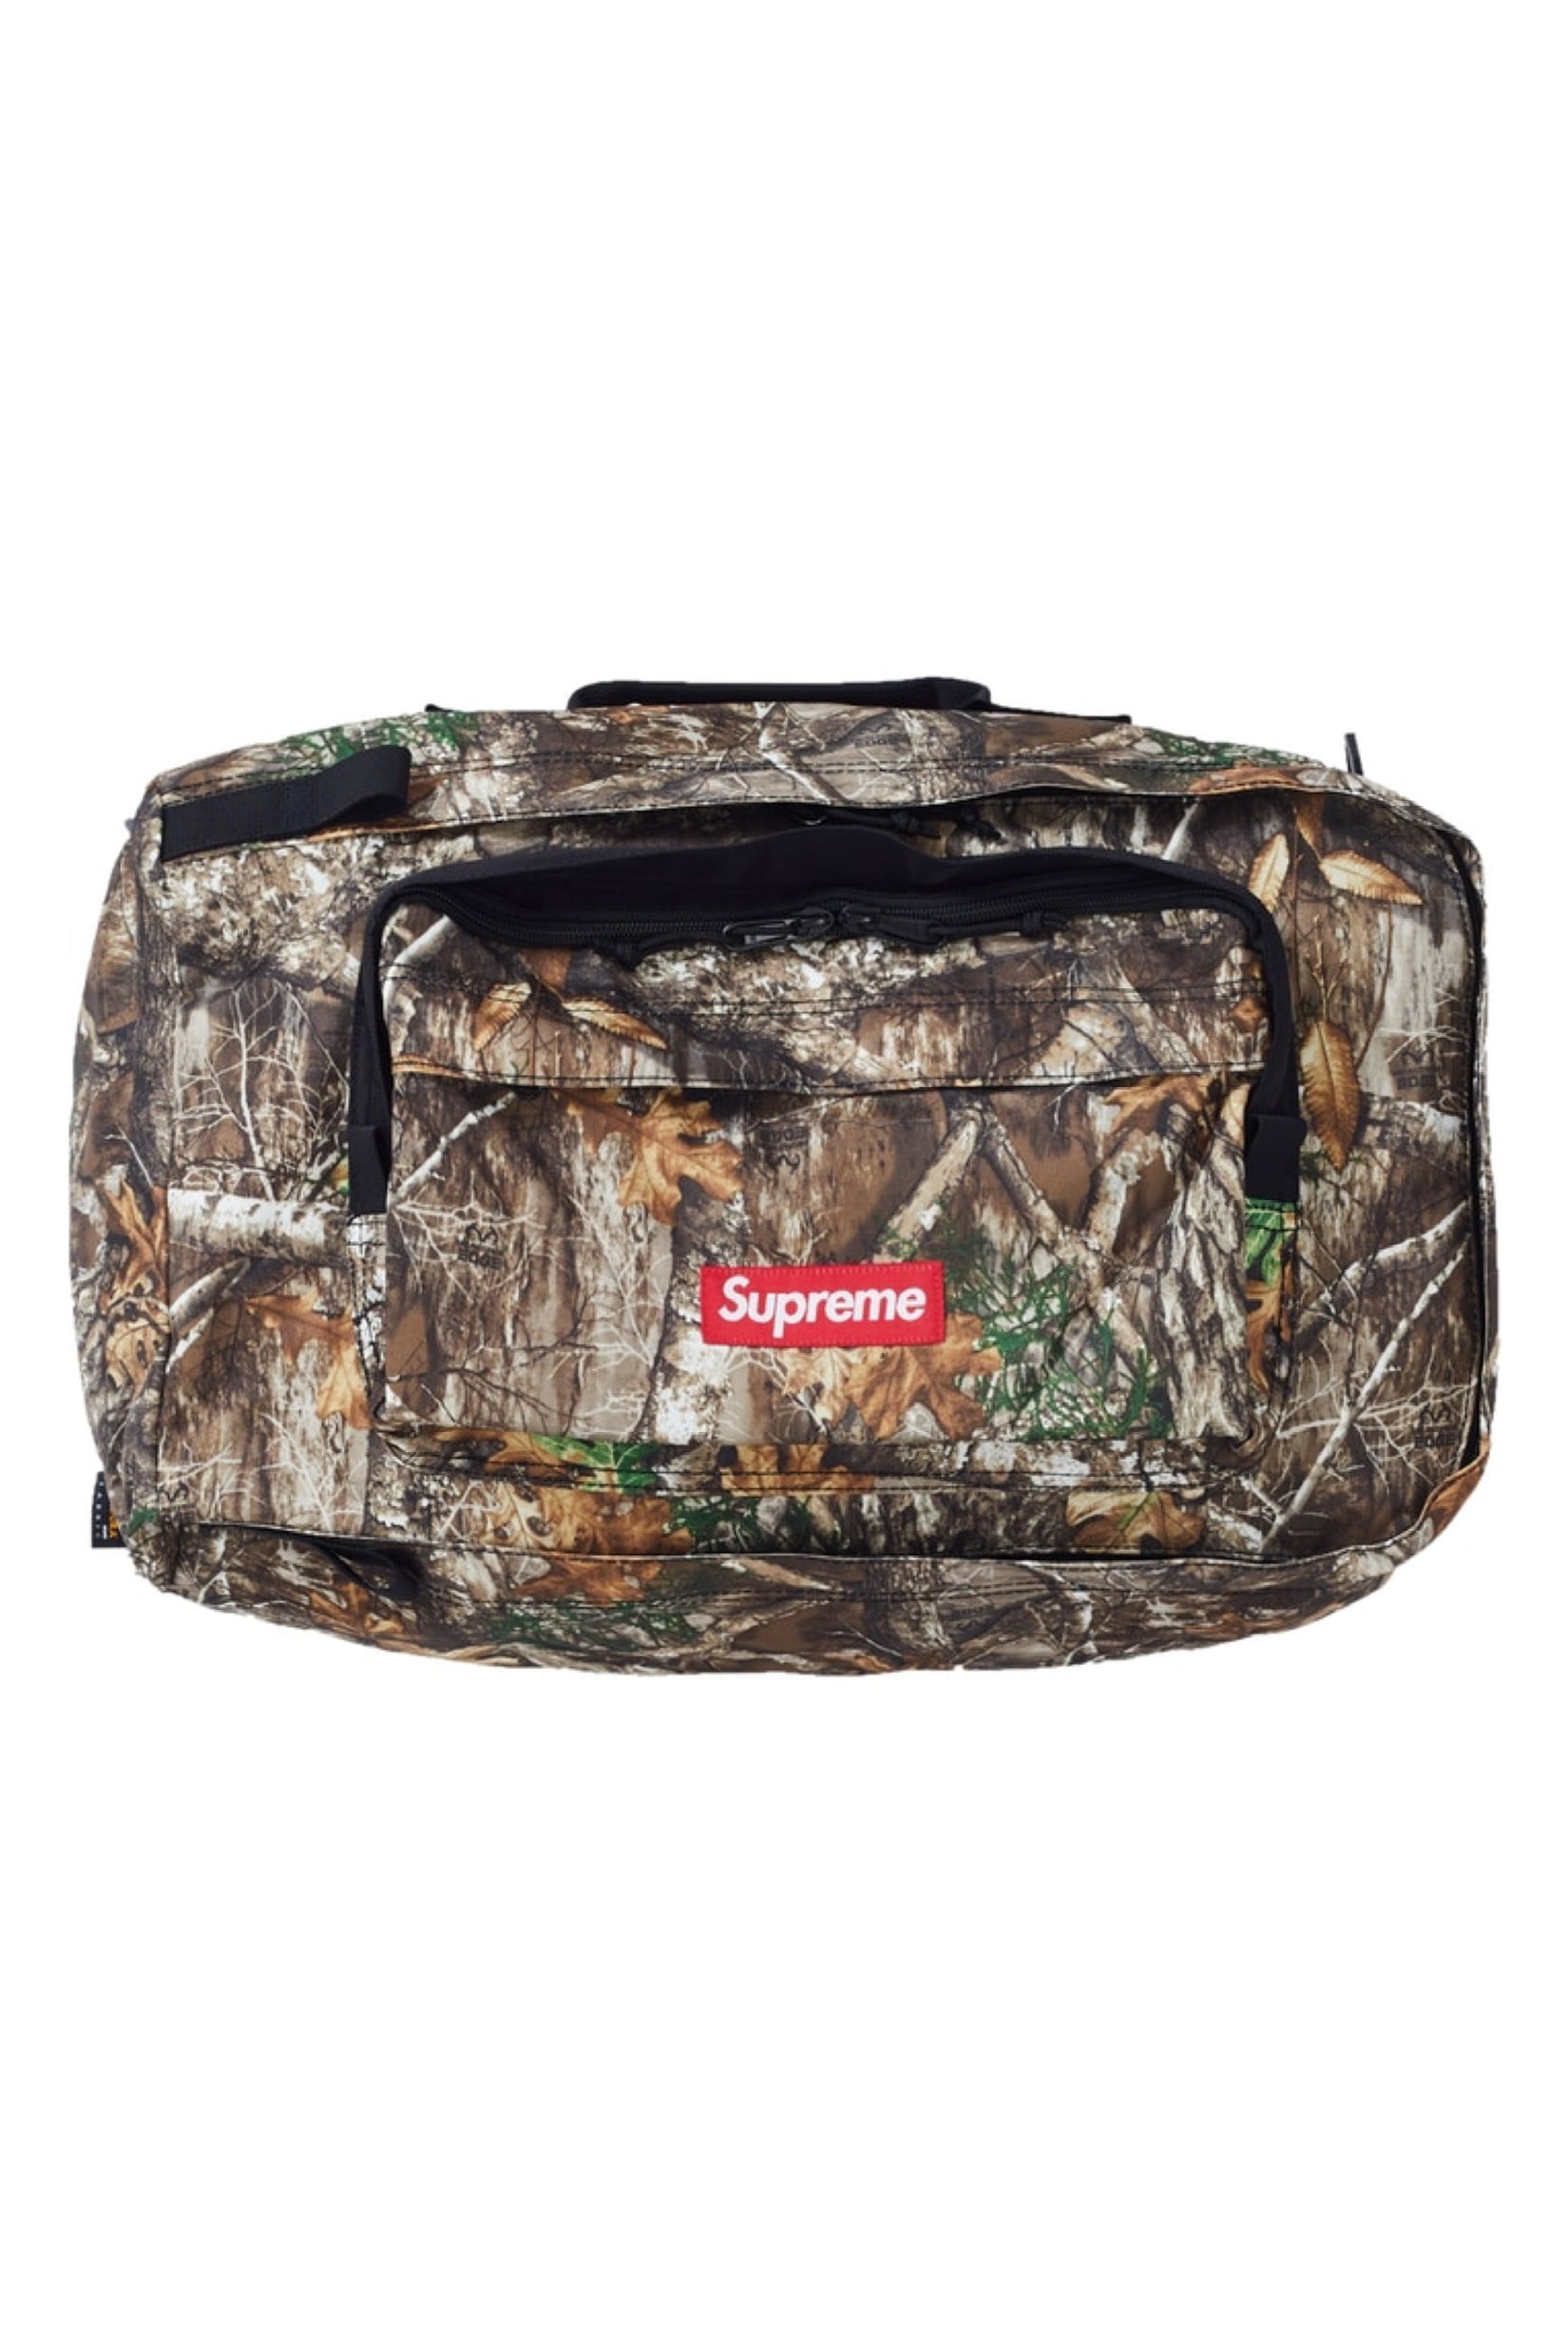 Supreme - Supreme Duffle Bag (FW19) Real Tree Camo - Walmart.com